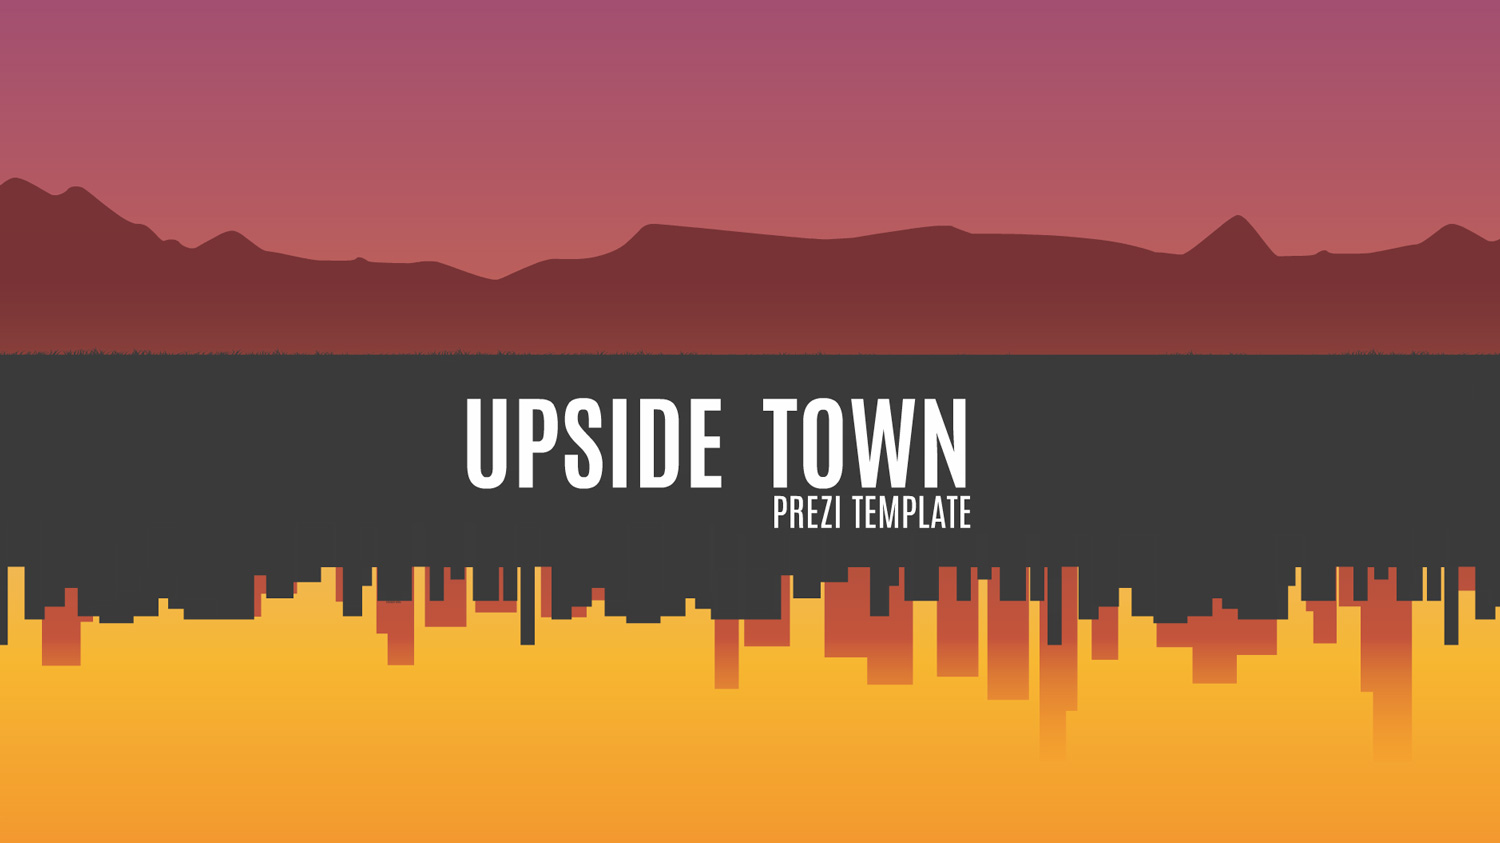 upside town Prezi template